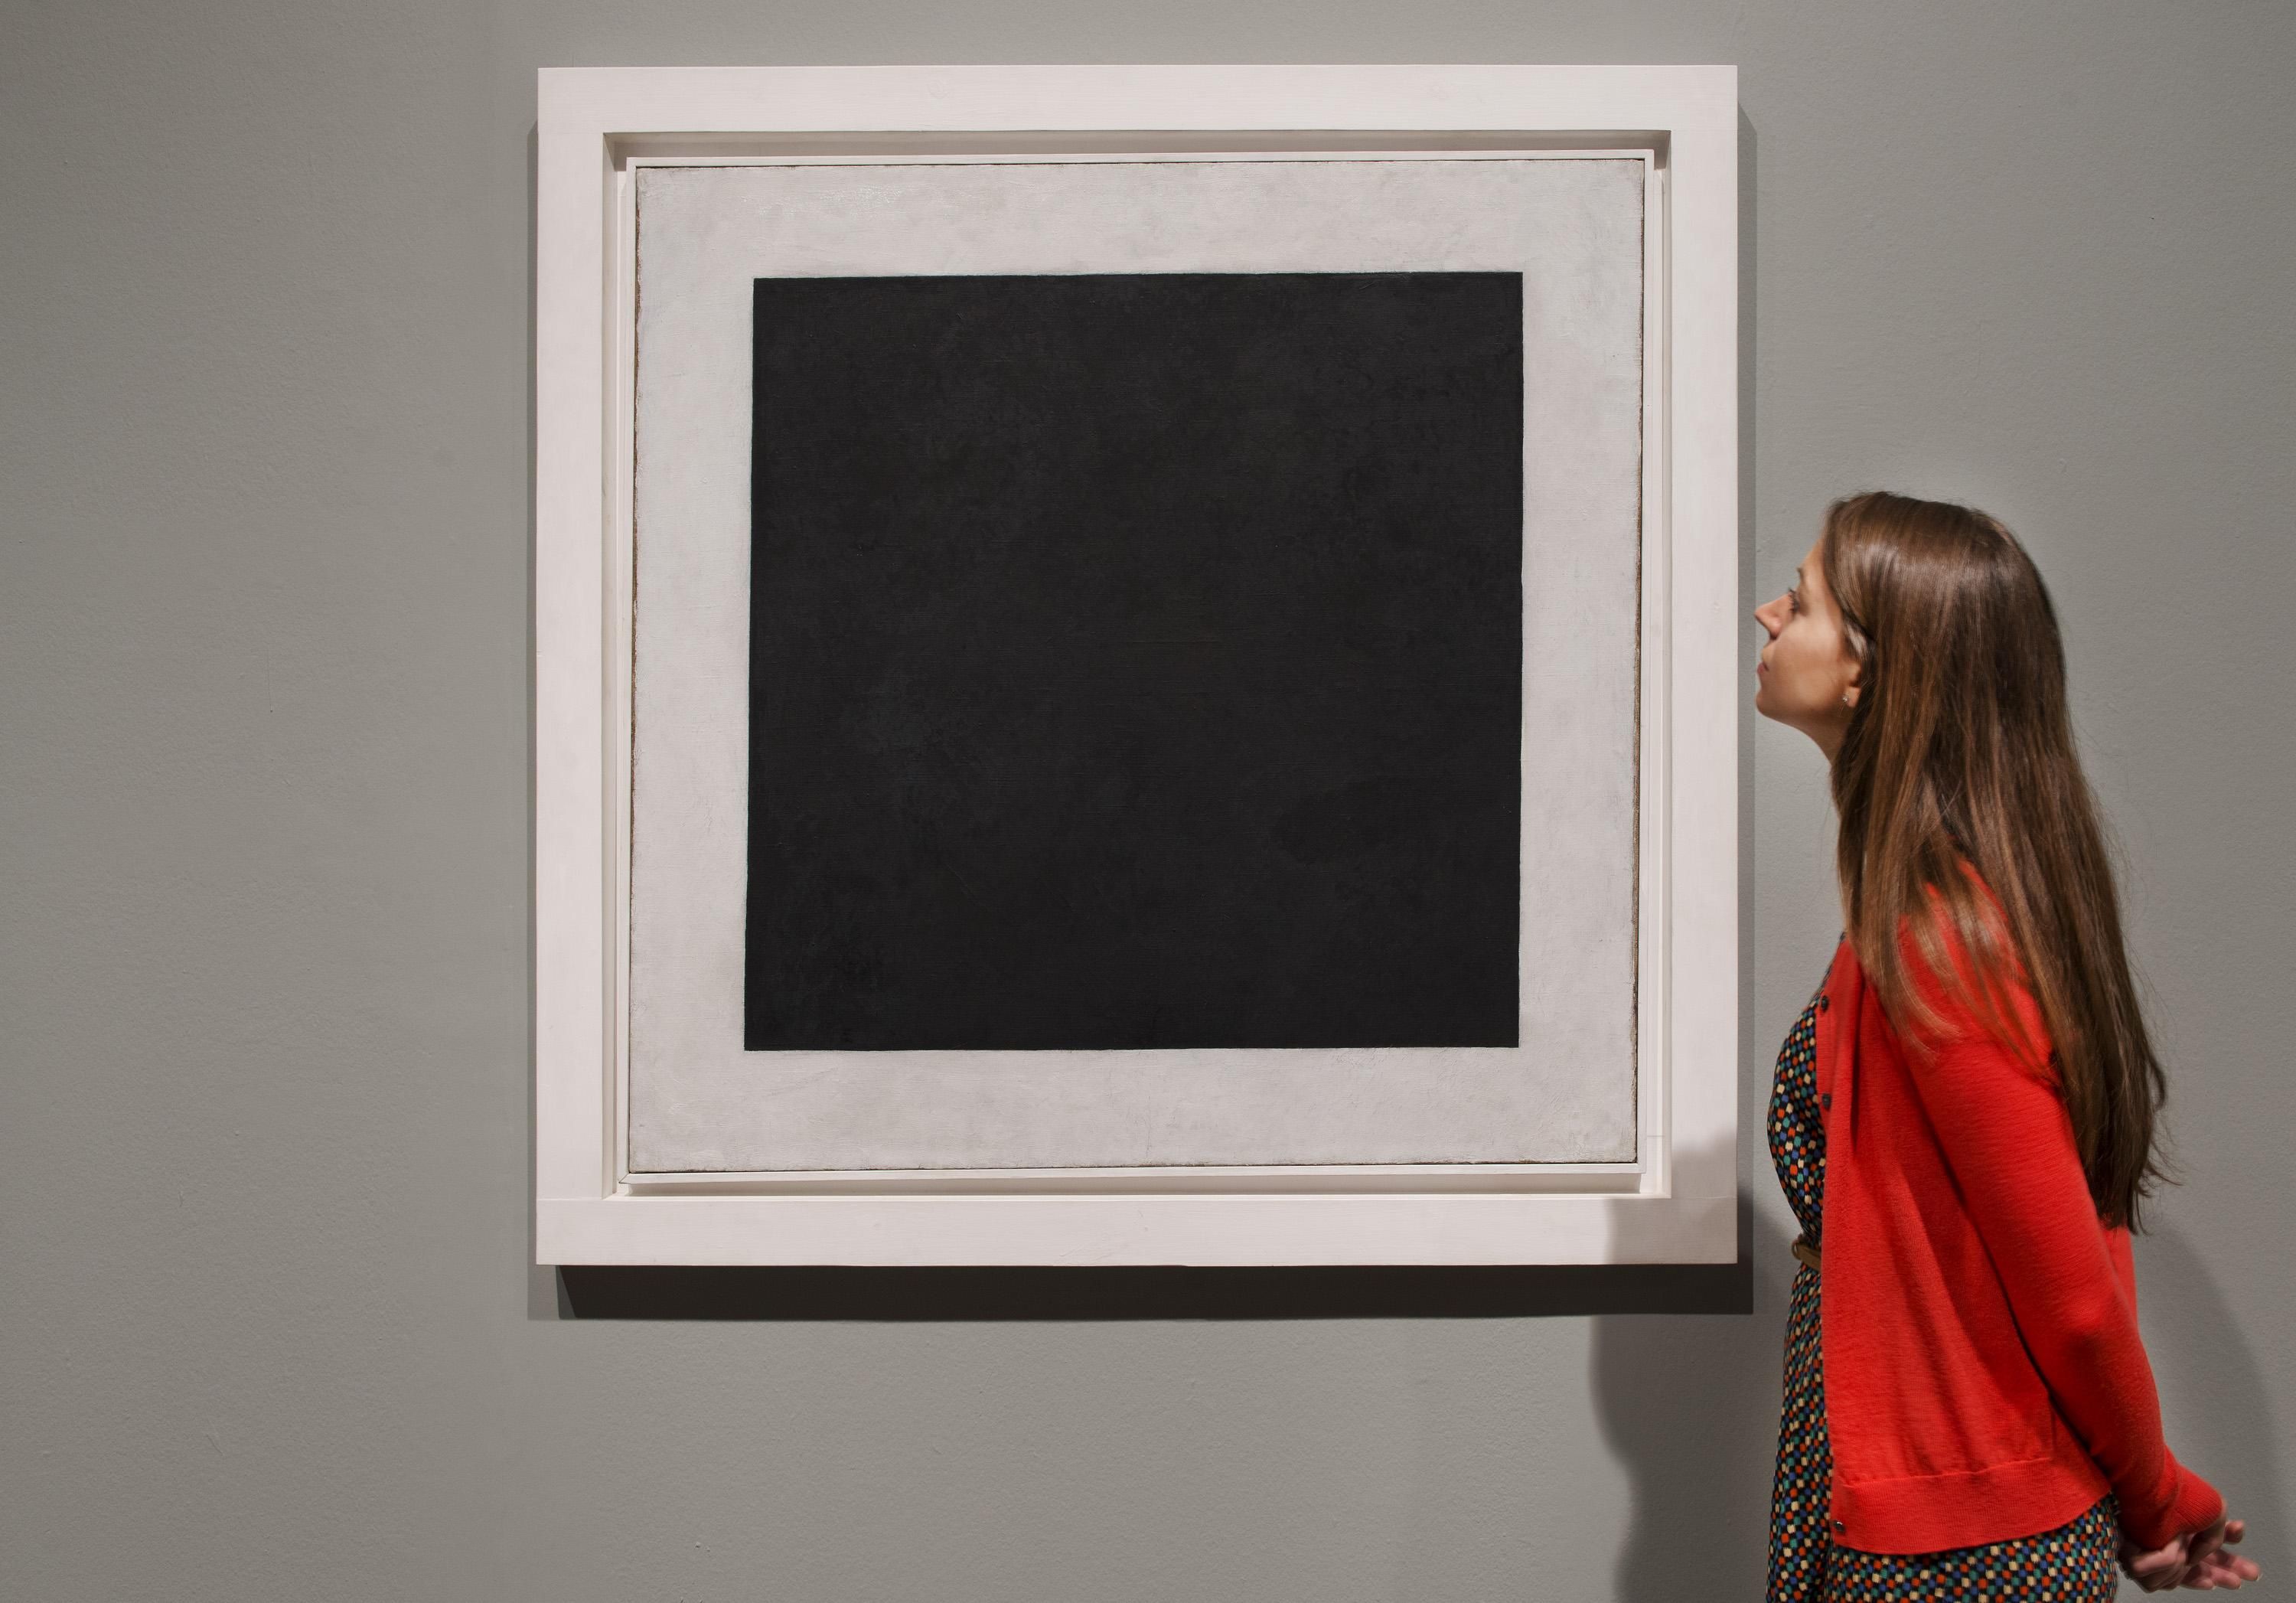 Невероятное открытие: под легендарным "Черным квадратом" Малевича есть другая картина